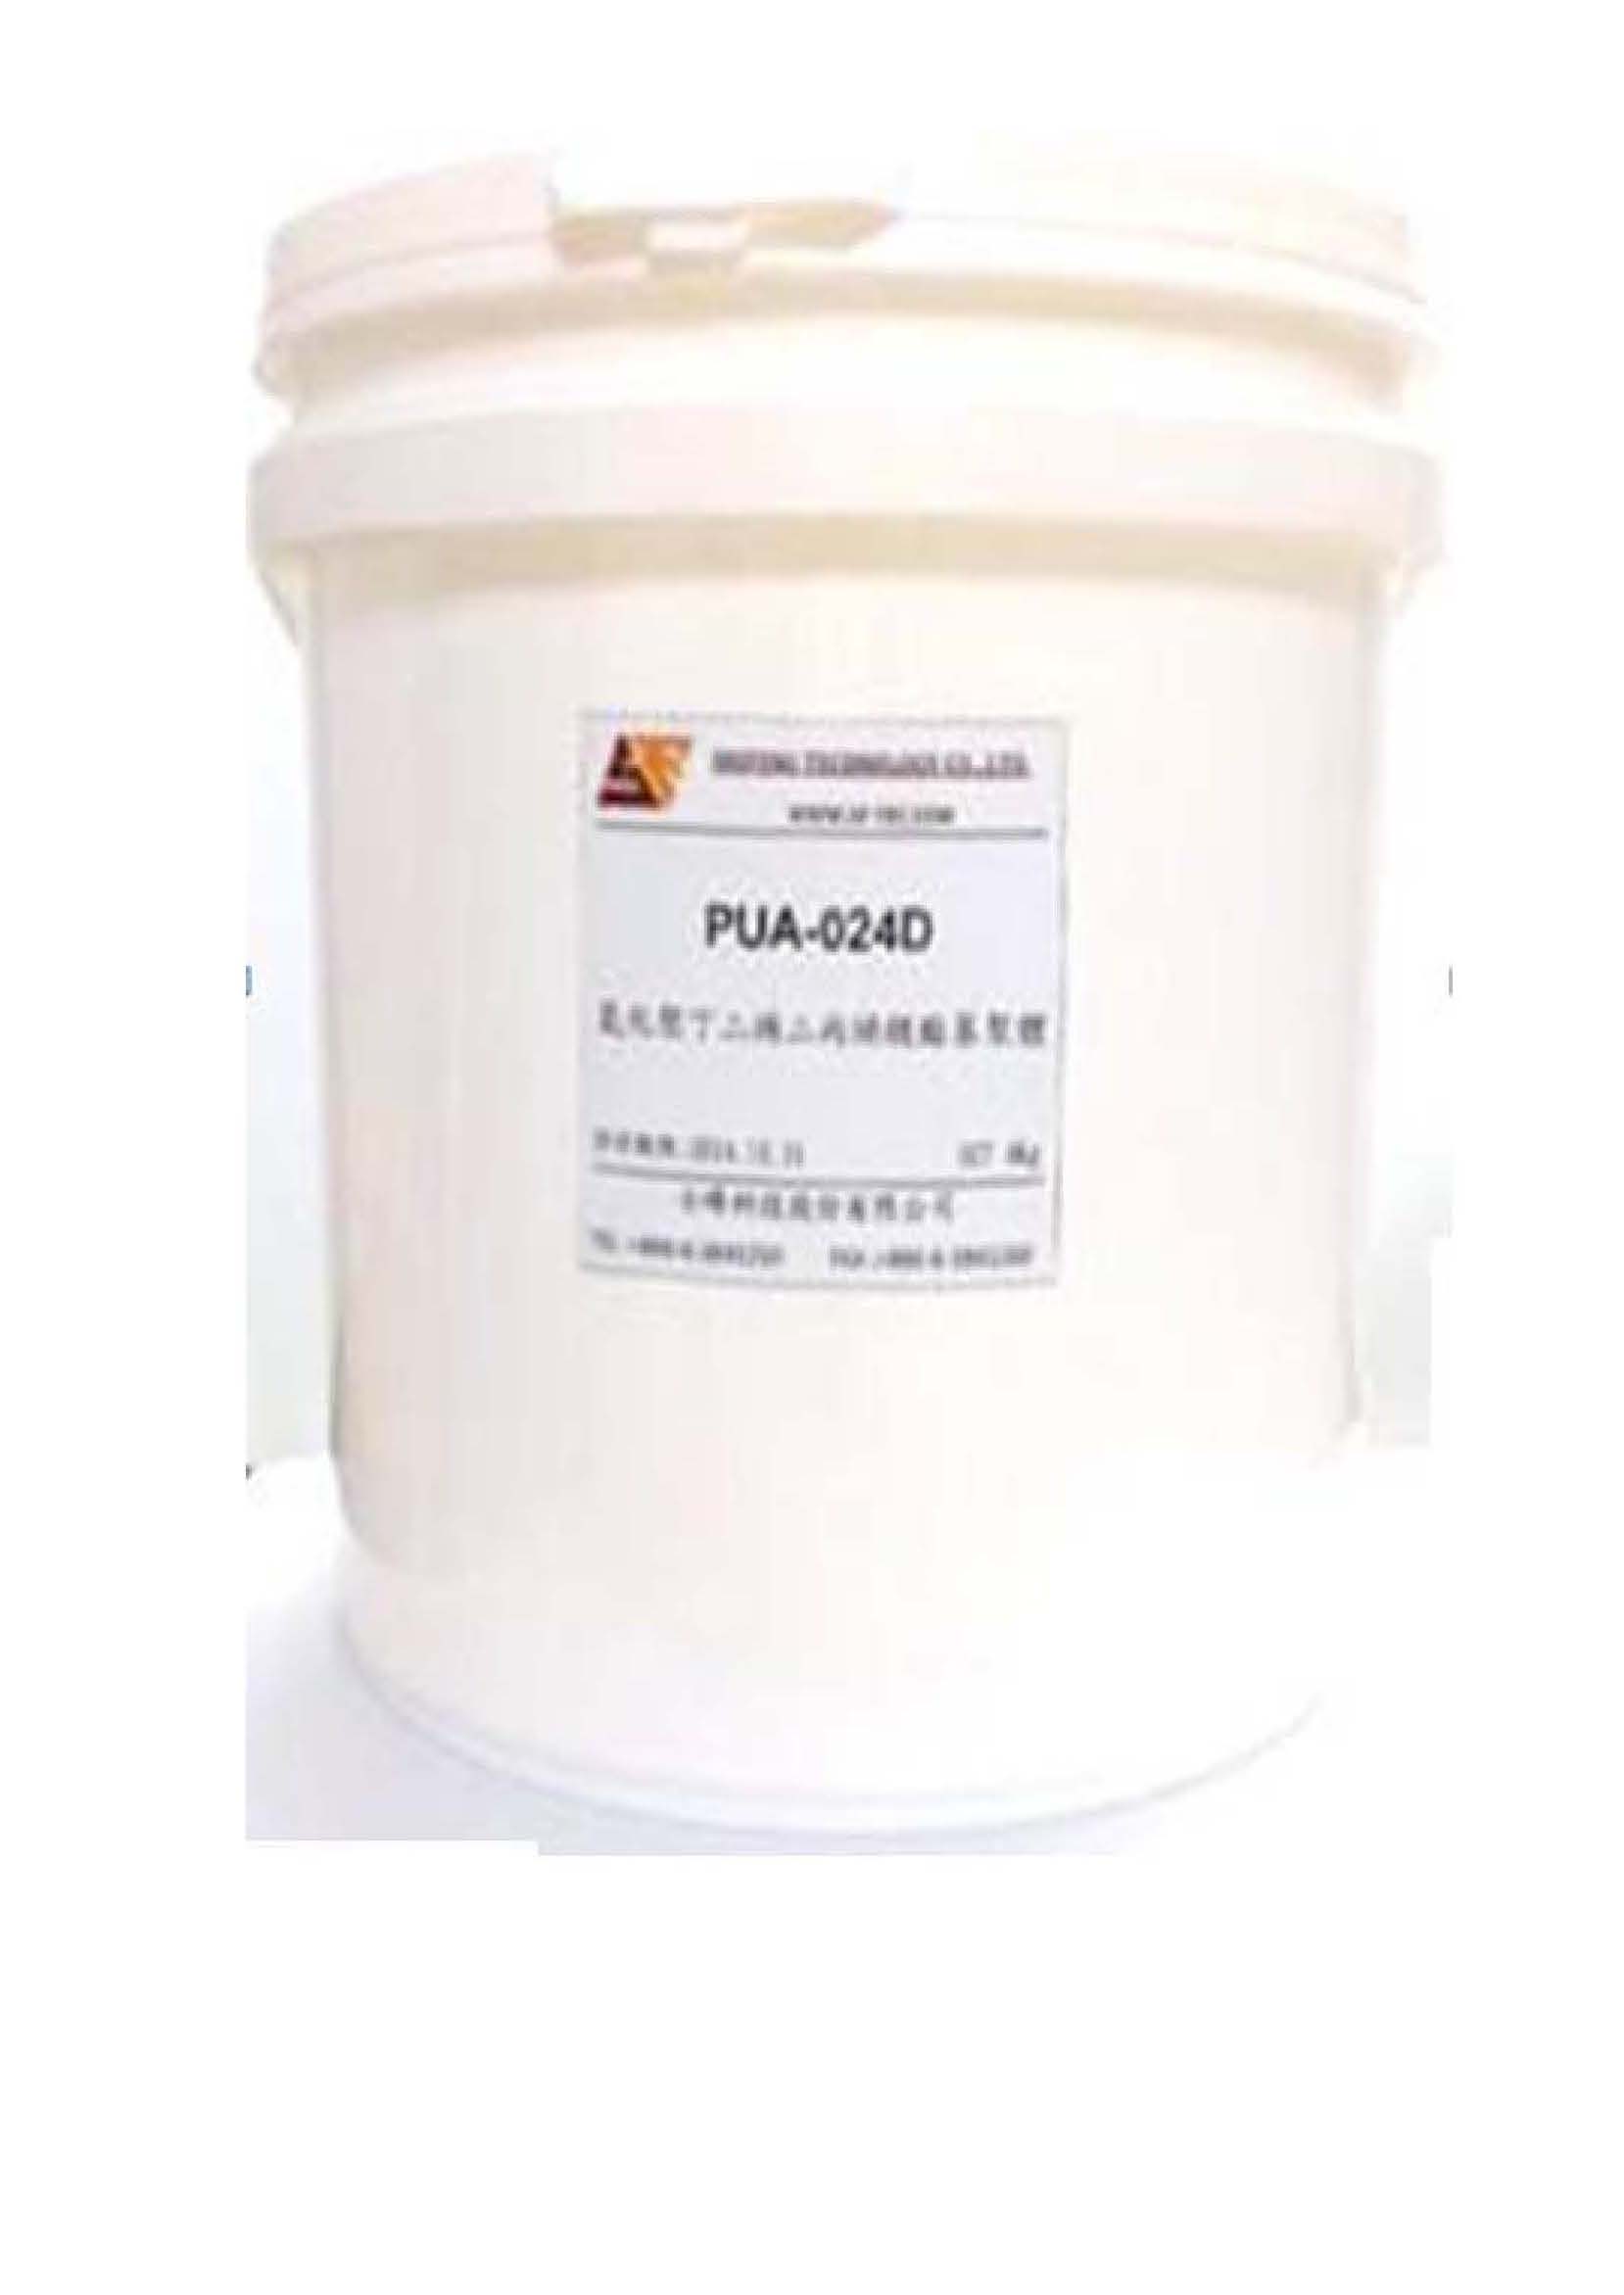 寡聚物 Hydrogenated Polybutadiene diacrylate oligomer